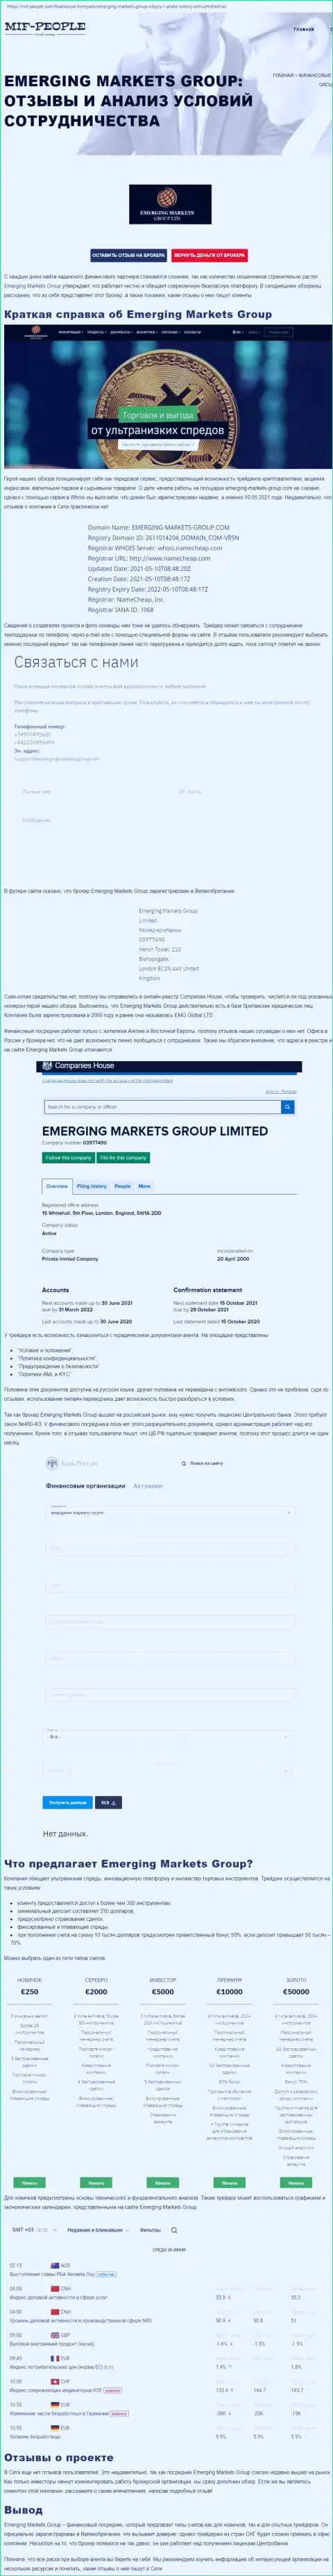 Публикация о брокерской организации Emerging Markets Group от сайта Mif-People Com